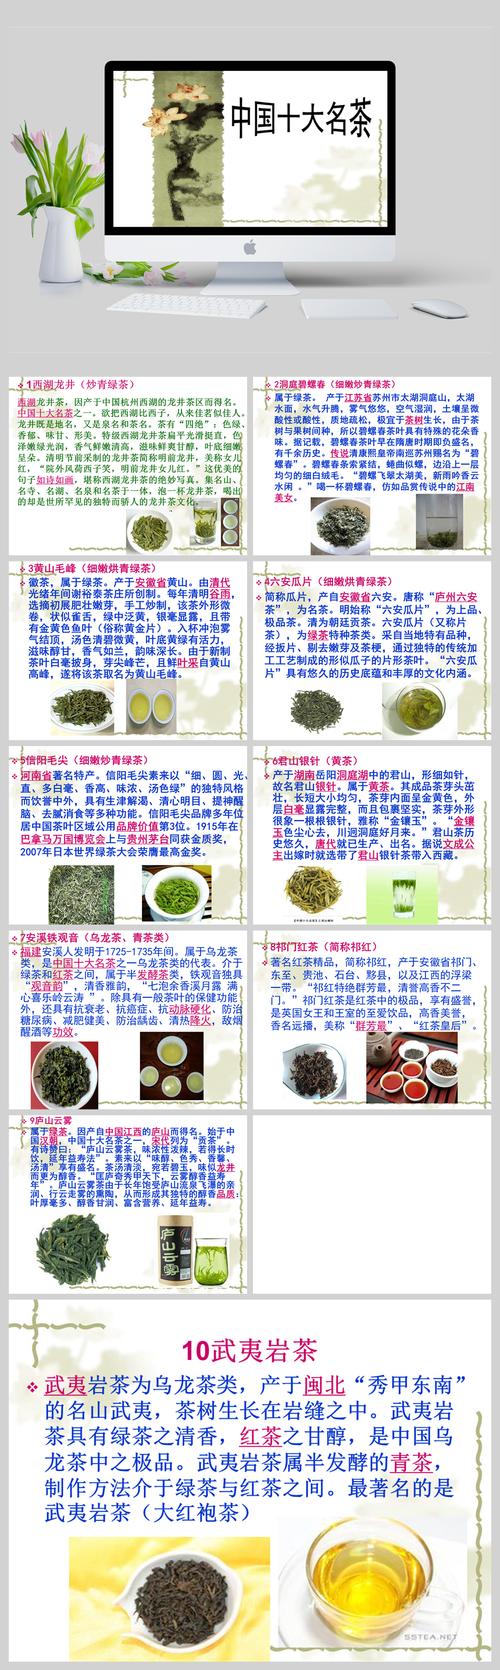 中国都有哪些名茶,中国有哪些名茶,请列举出并写出产地